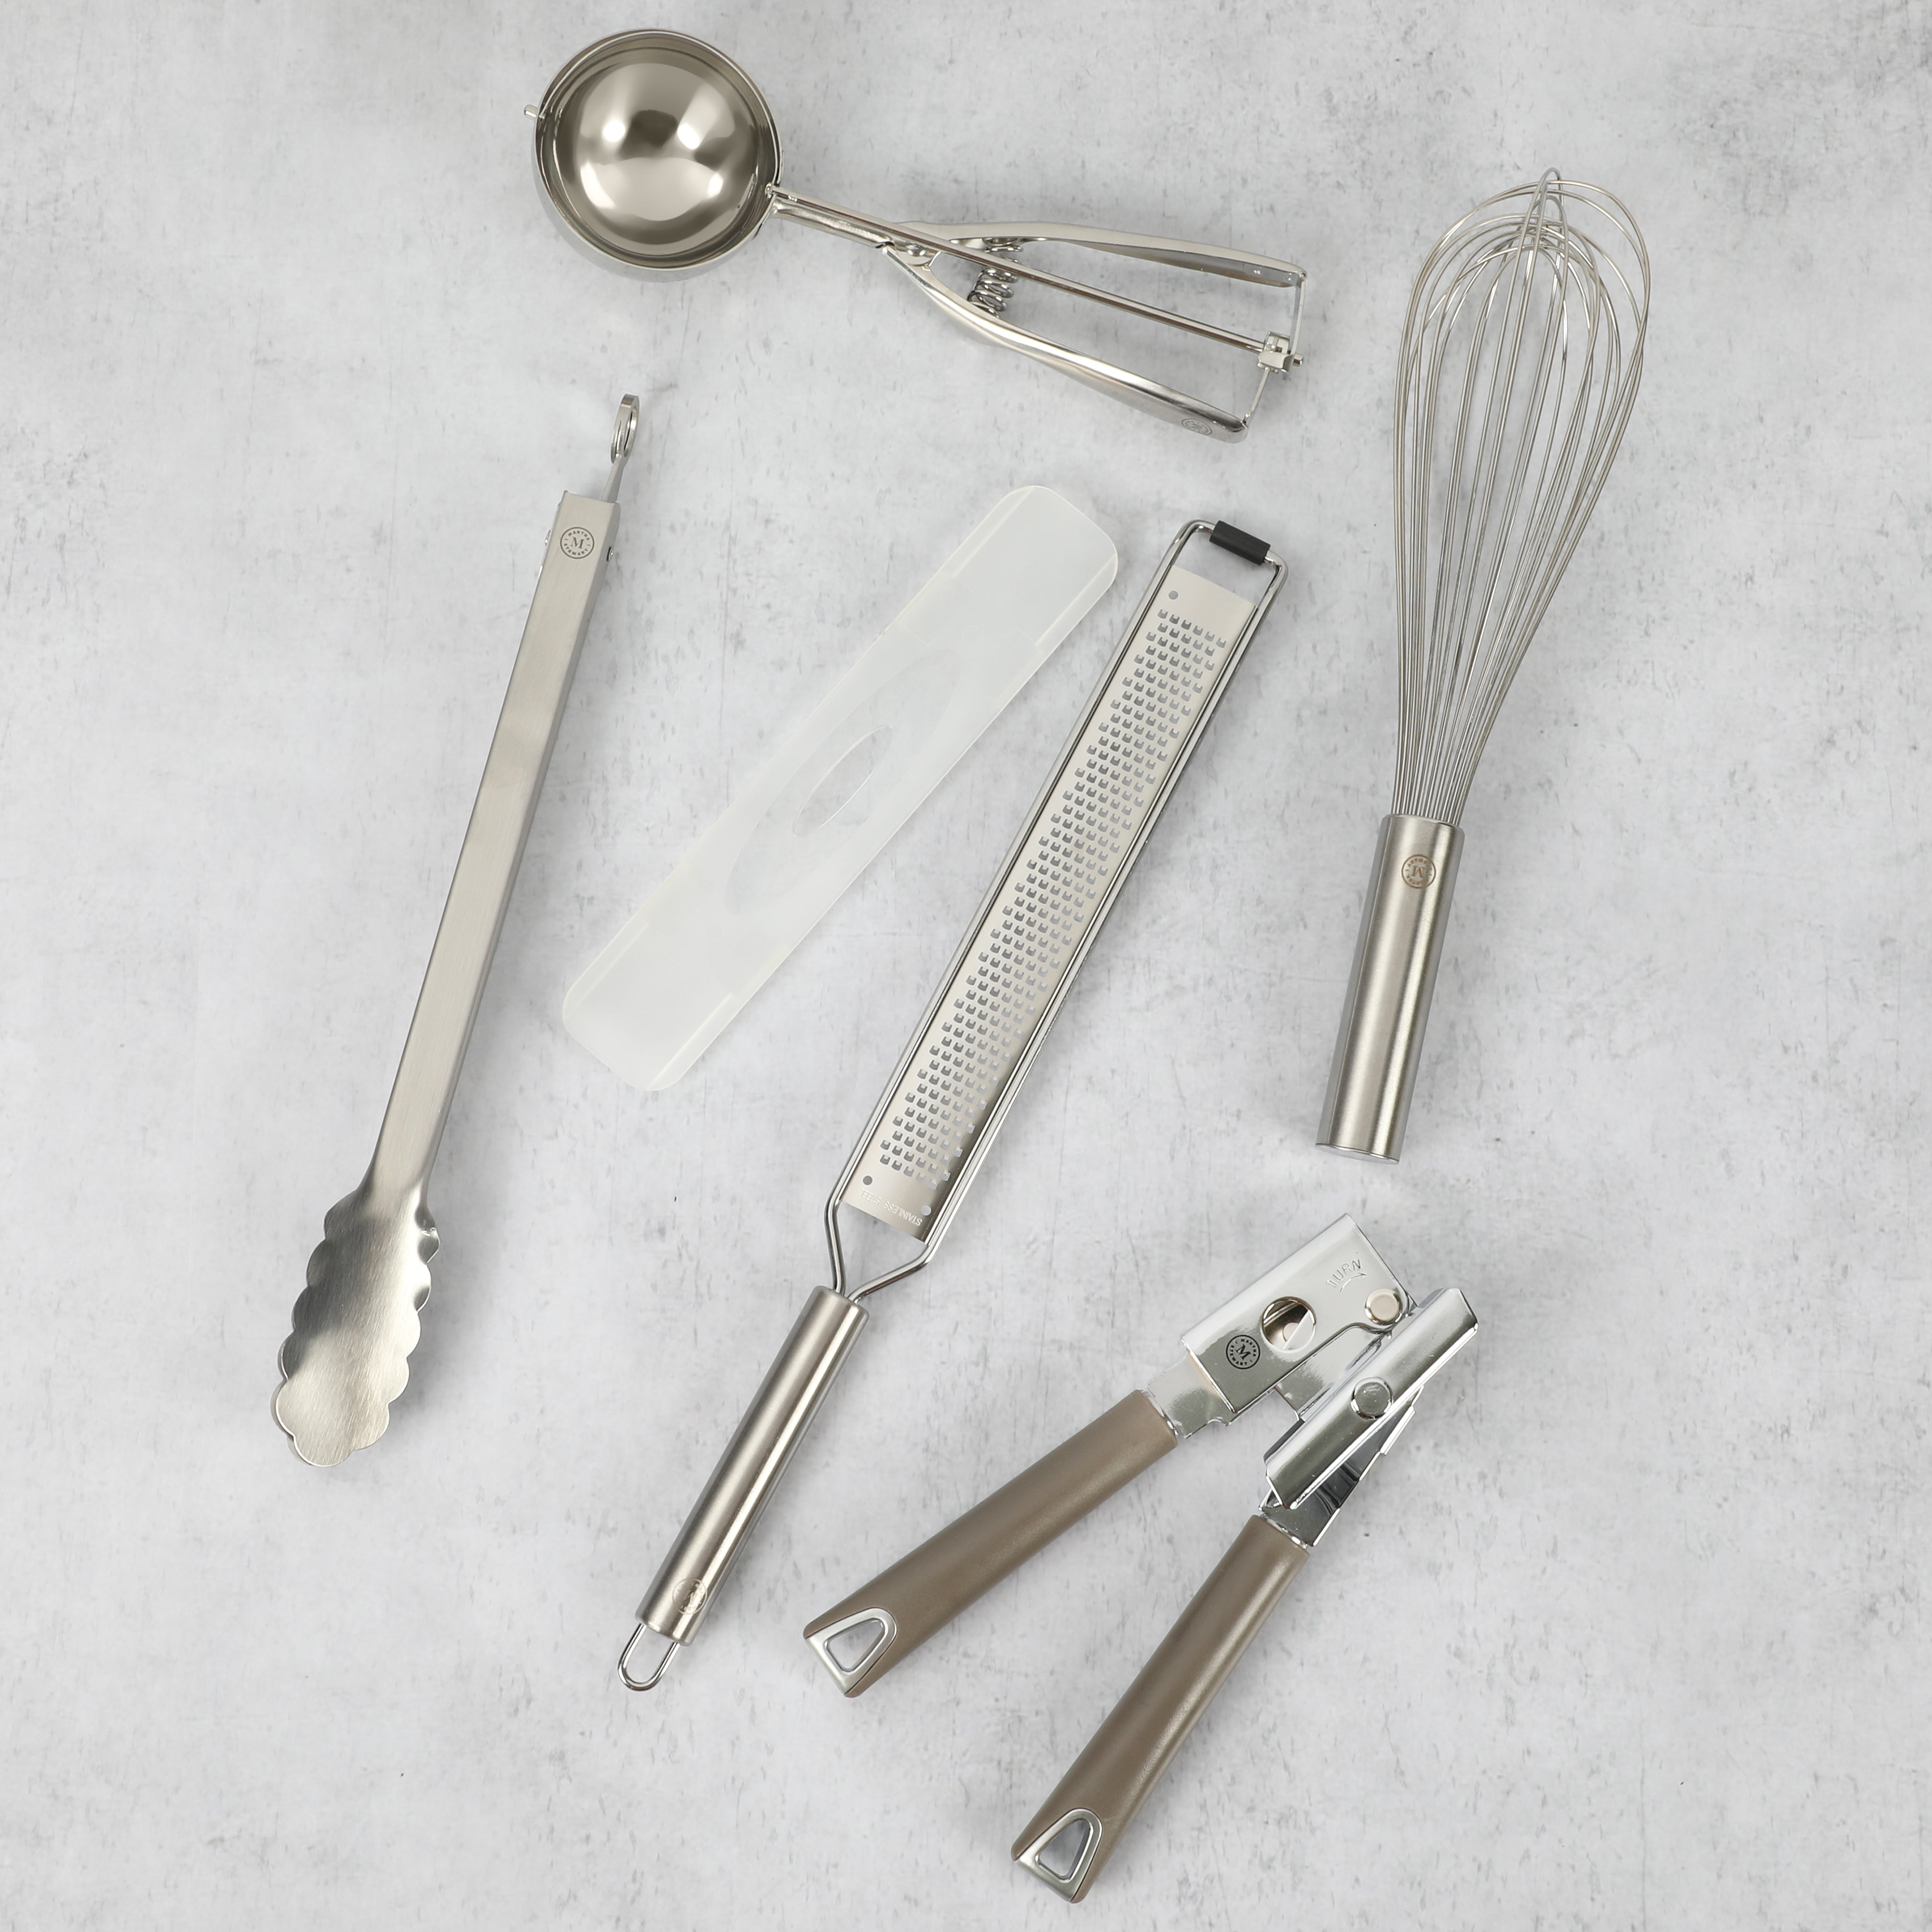 Martha Stewart 5-Piece Richburn Kitchen Prep Tools and Gadget Set